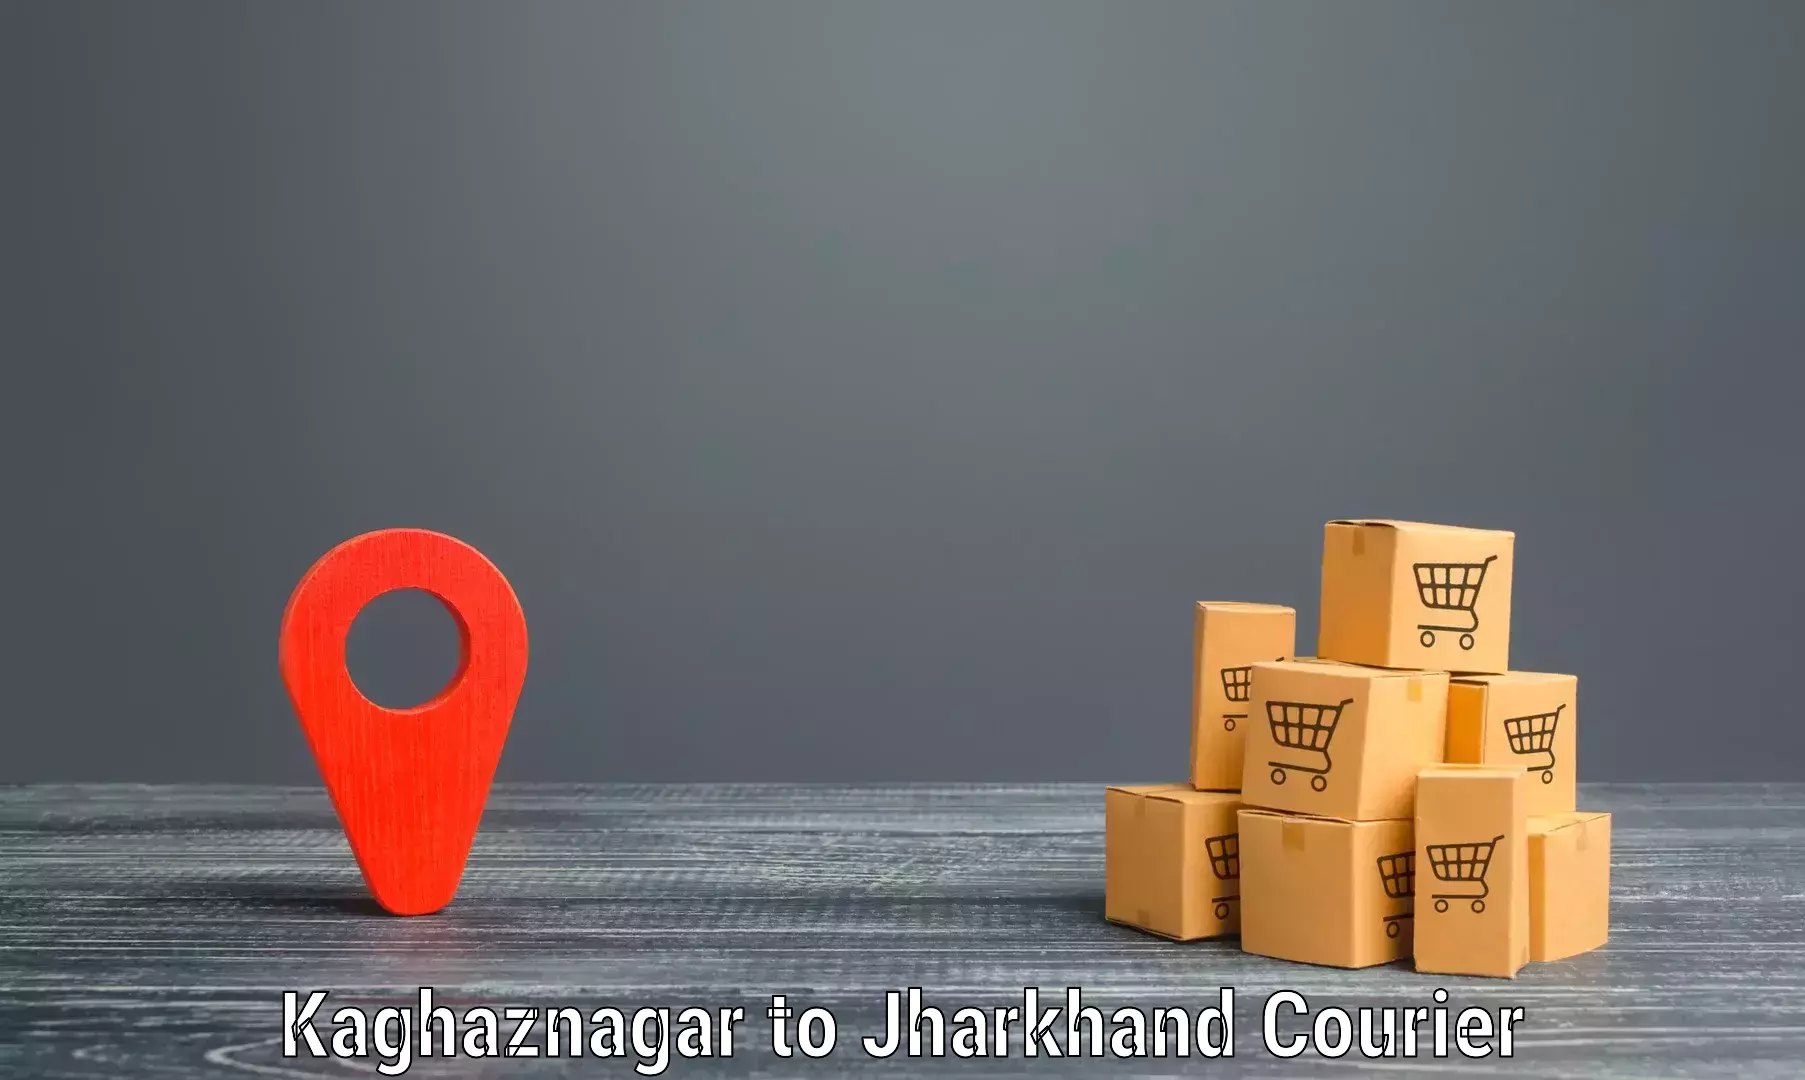 Nationwide parcel services Kaghaznagar to Kedla